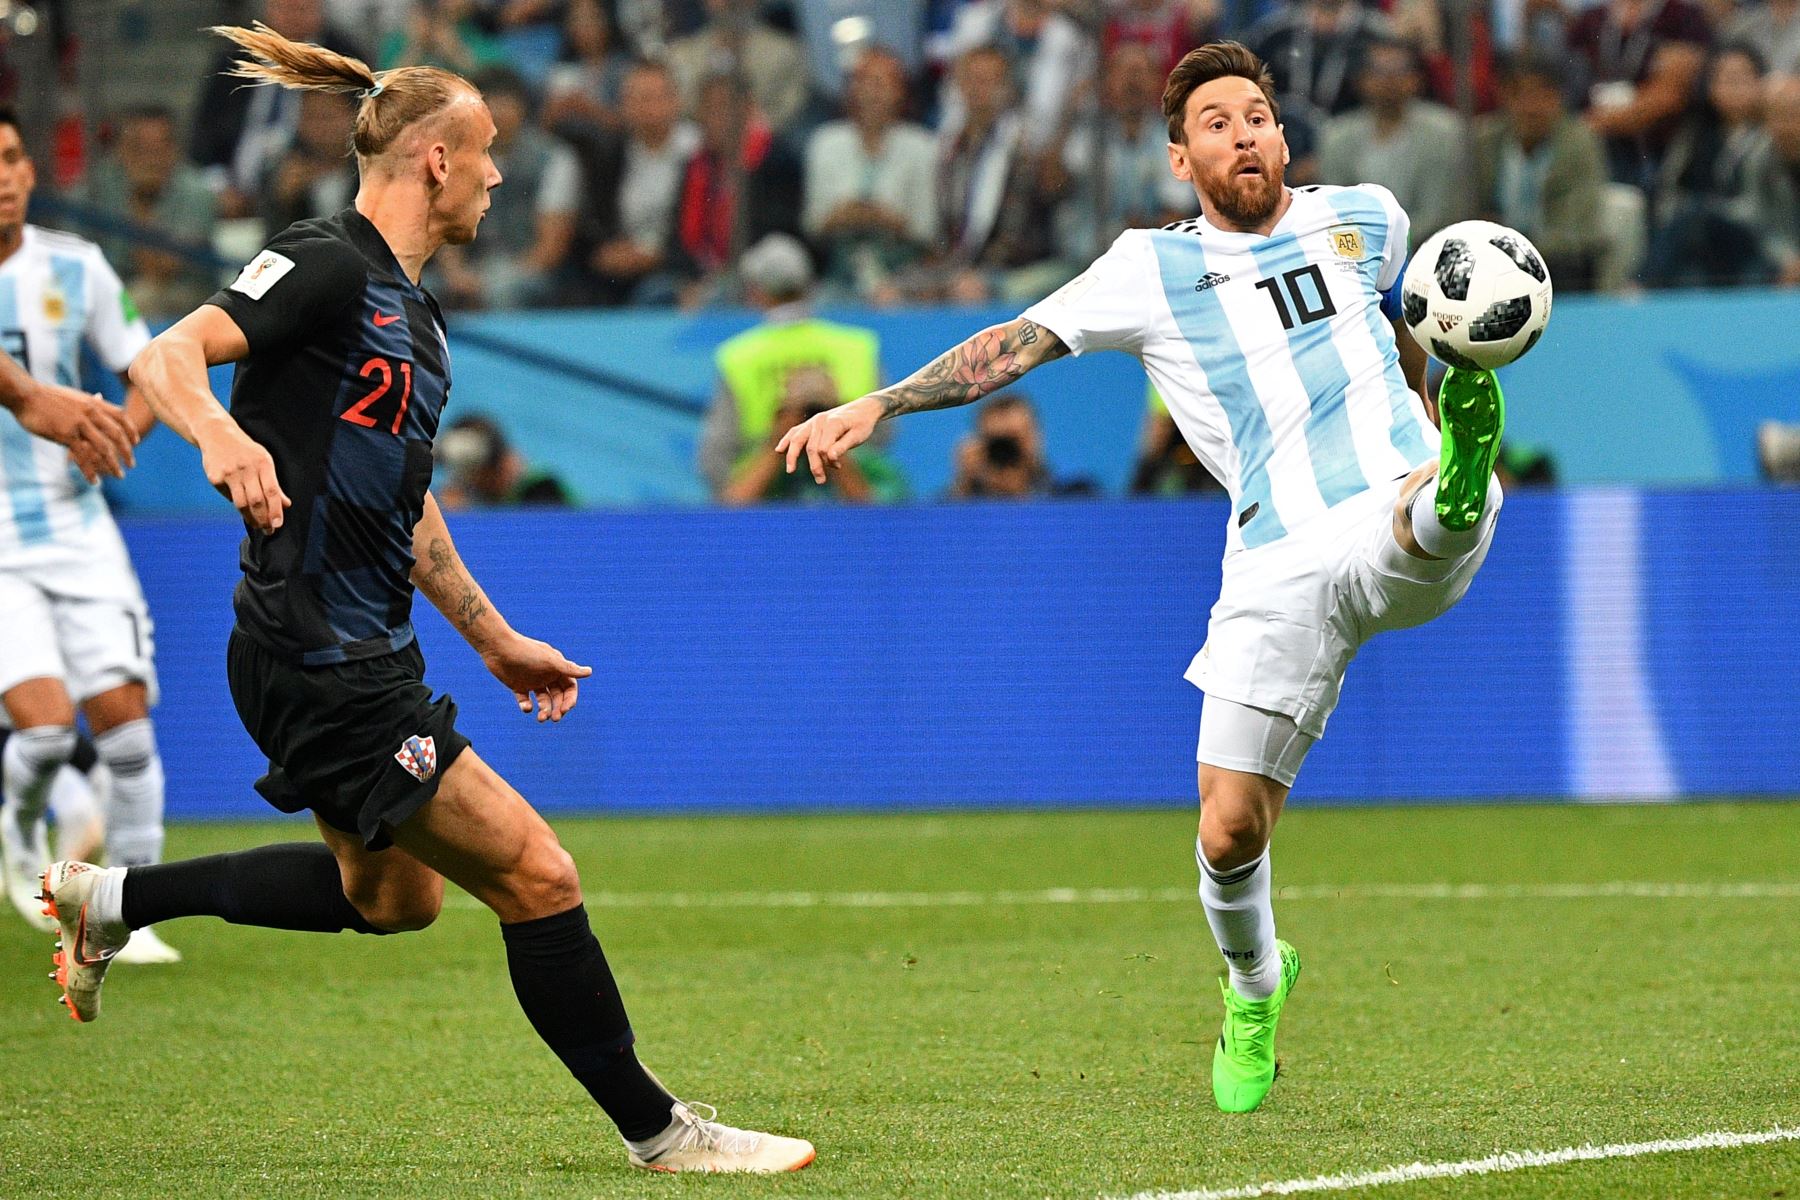 El delantero argentino Lionel Messi (R) controla el balón frente al defensa croata Domagoj Vidaduring en el partido de fútbol del Grupo D de la Copa Mundial Rusia 2018 entre Argentina y Croacia en el estadio Nizhny Novgorod de Nizhny Novgorod el 21 de junio de 2018. / AFP